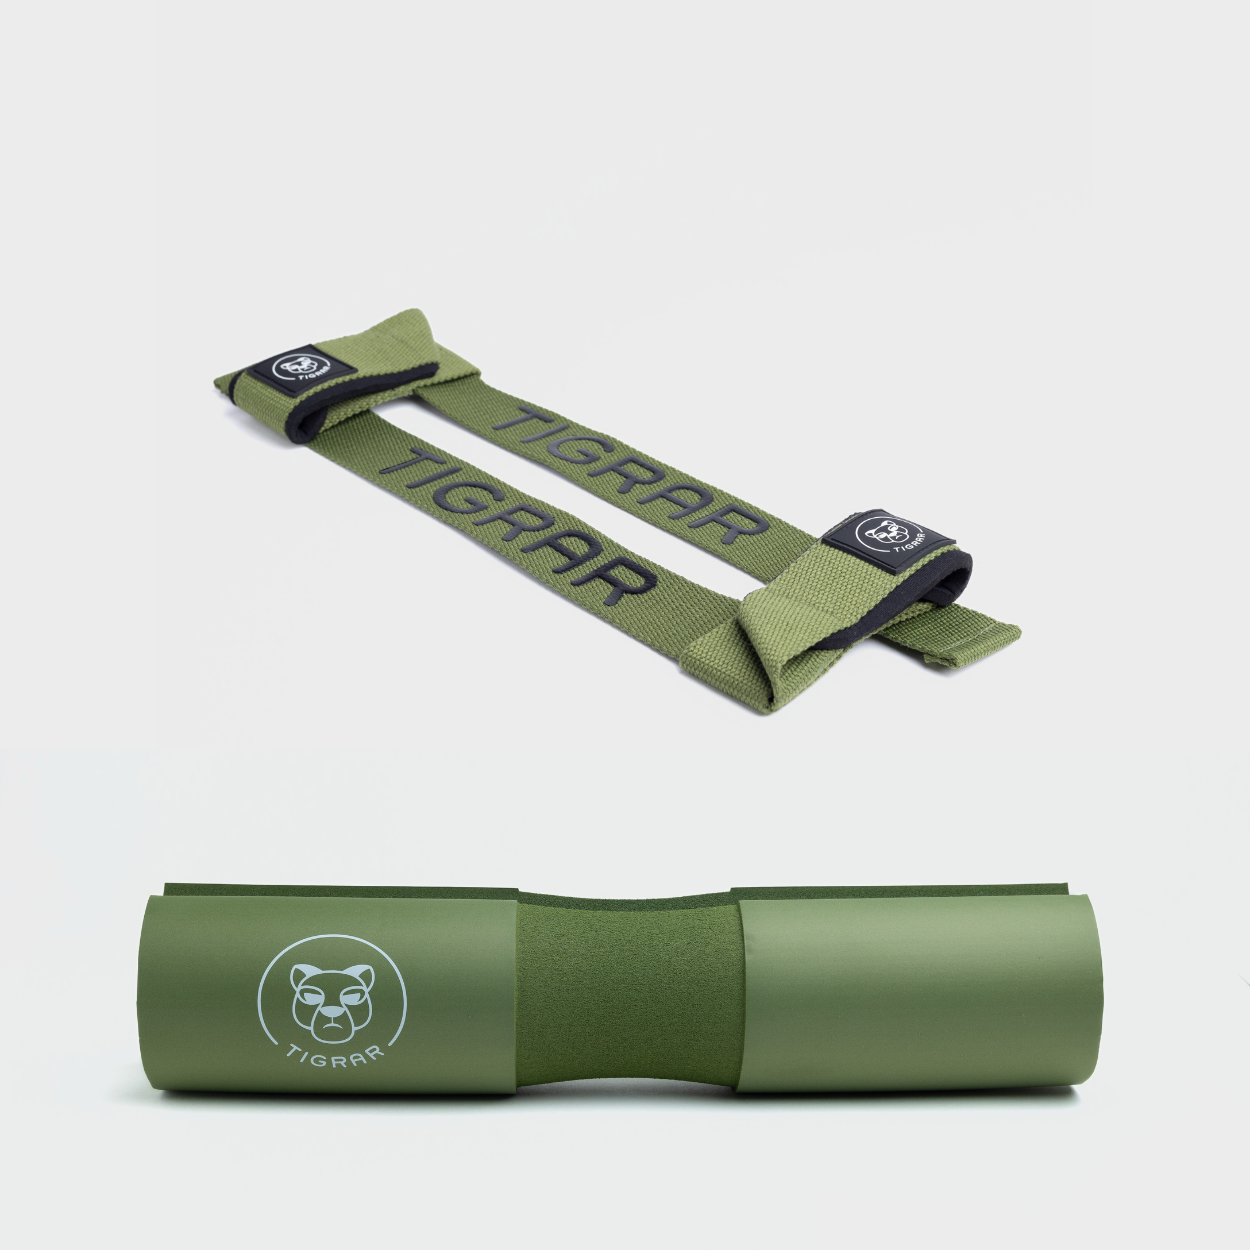 Groene Tigrar lifting straps en barbell pad, geoptimaliseerd voor duurzaamheid en comfort tijdens training.